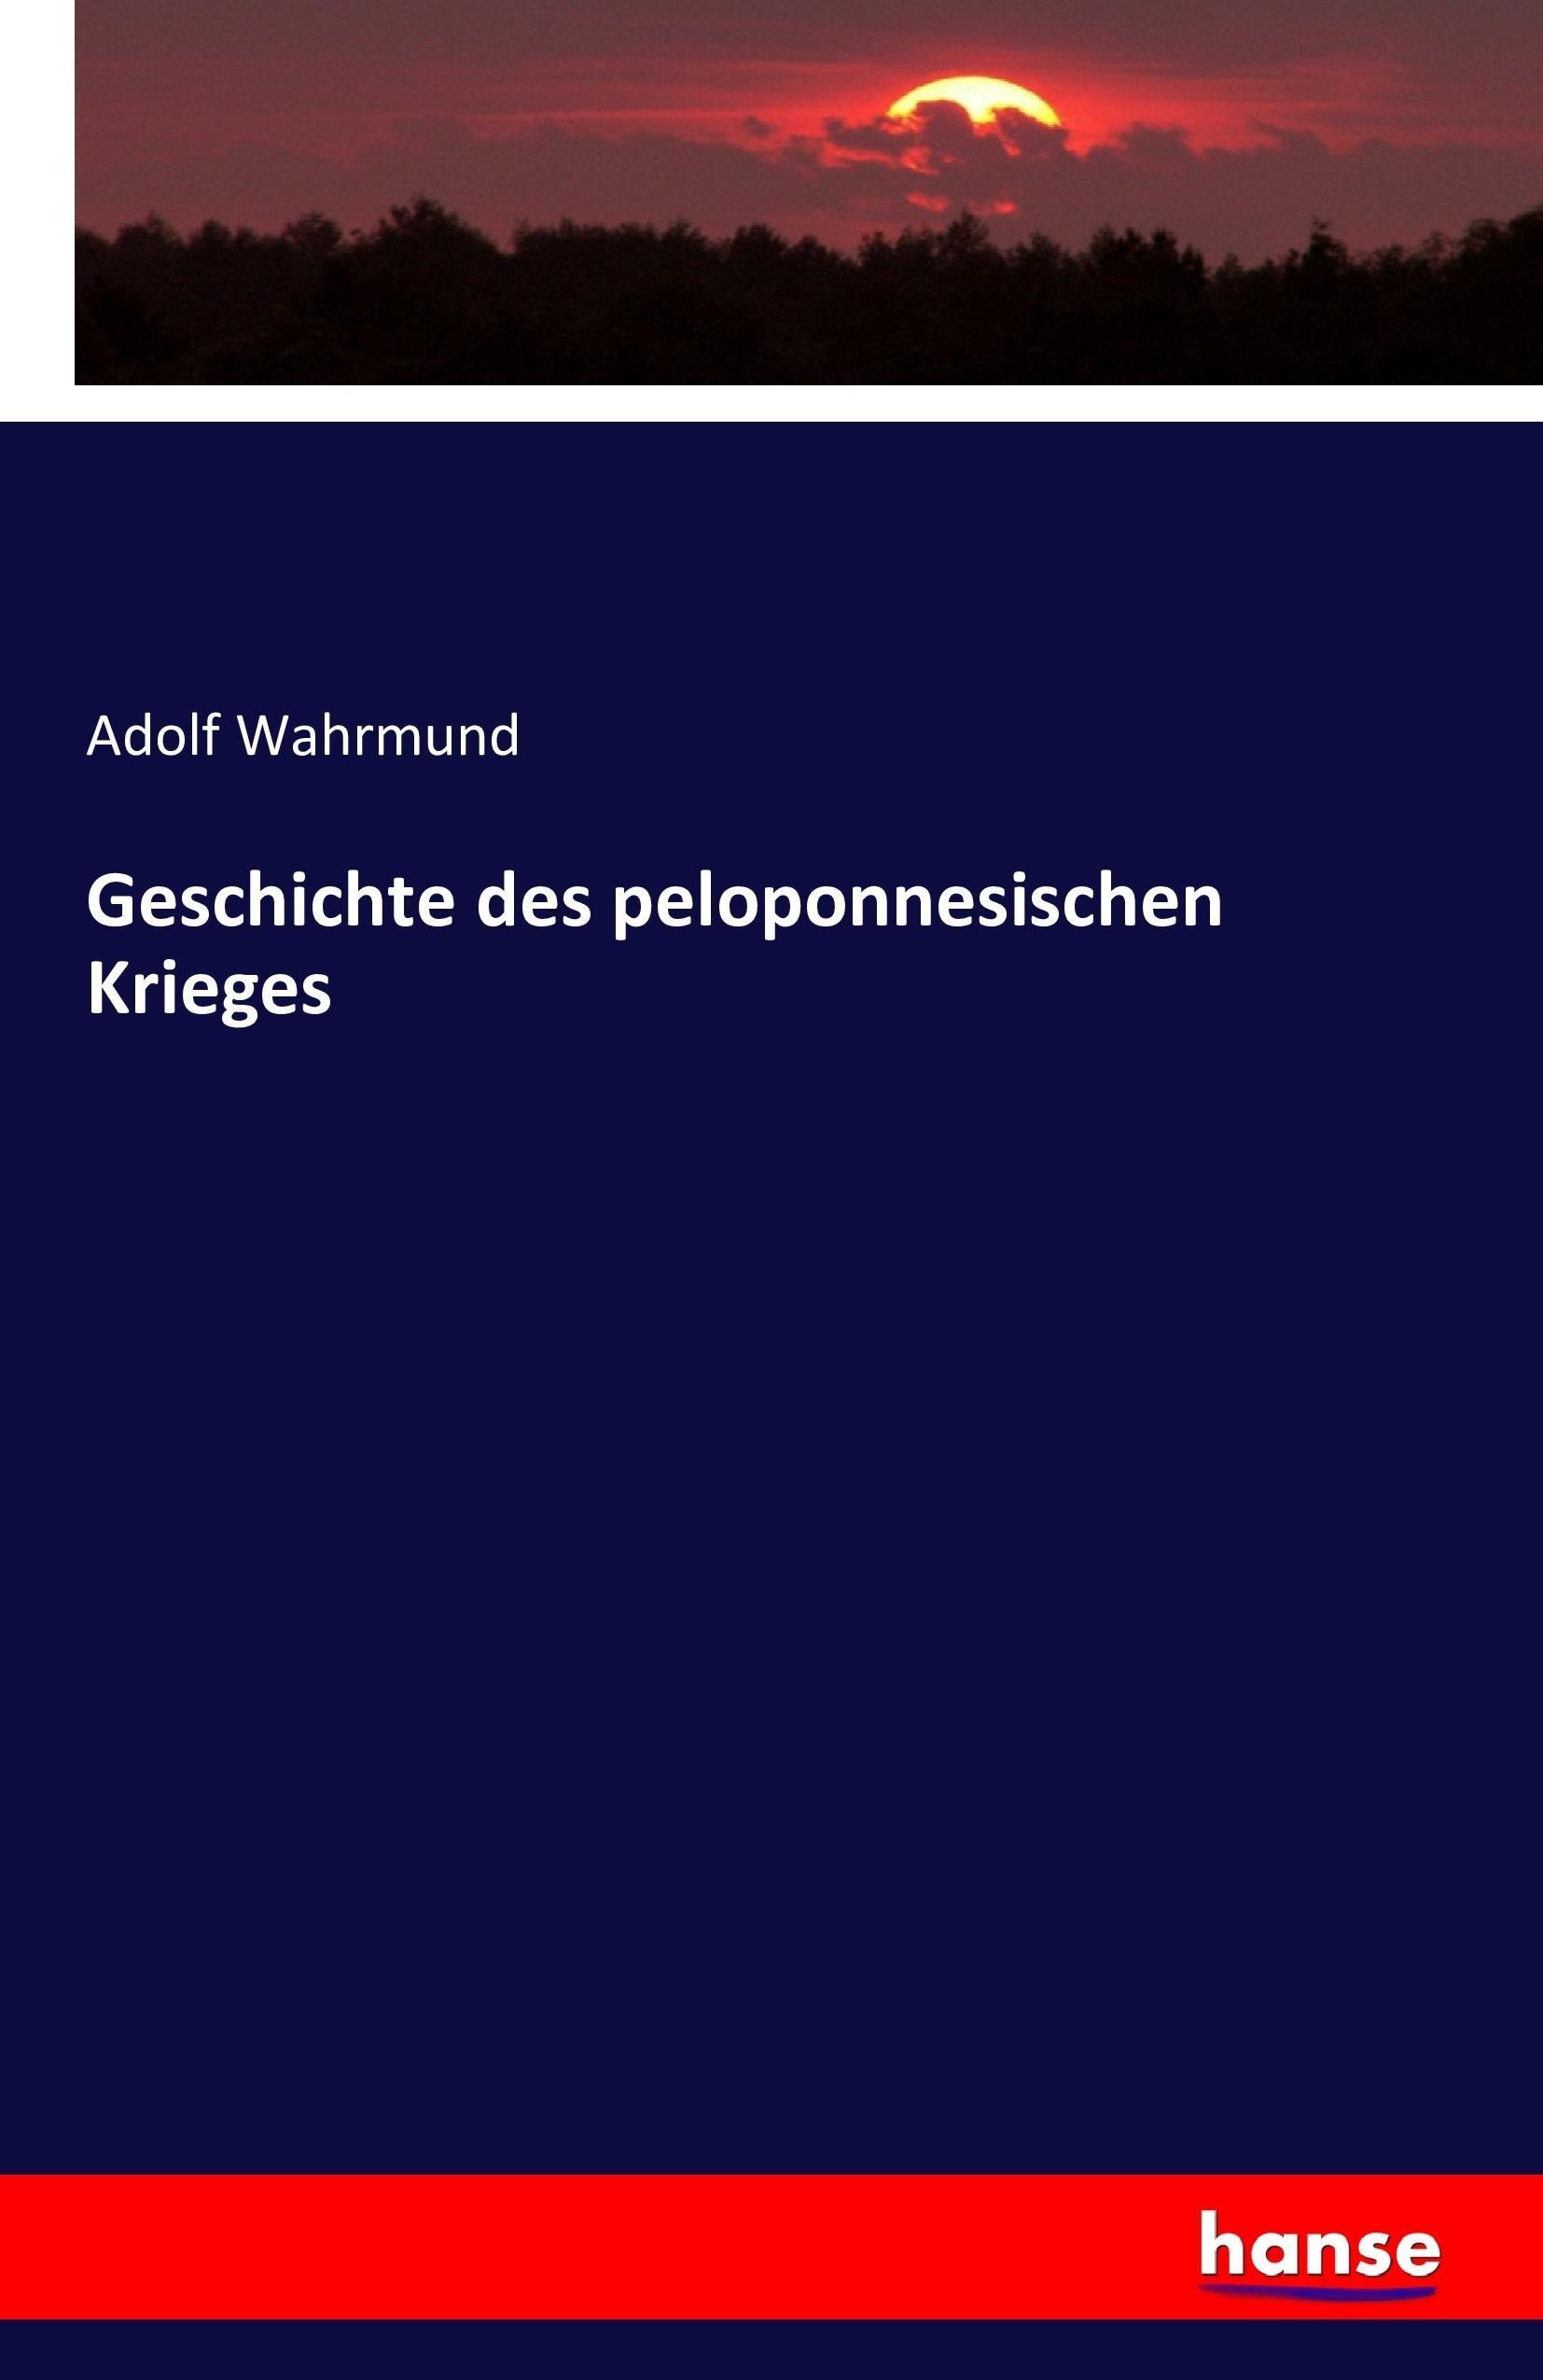 Geschichte des peloponnesischen Krieges - Wahrmund, Adolf